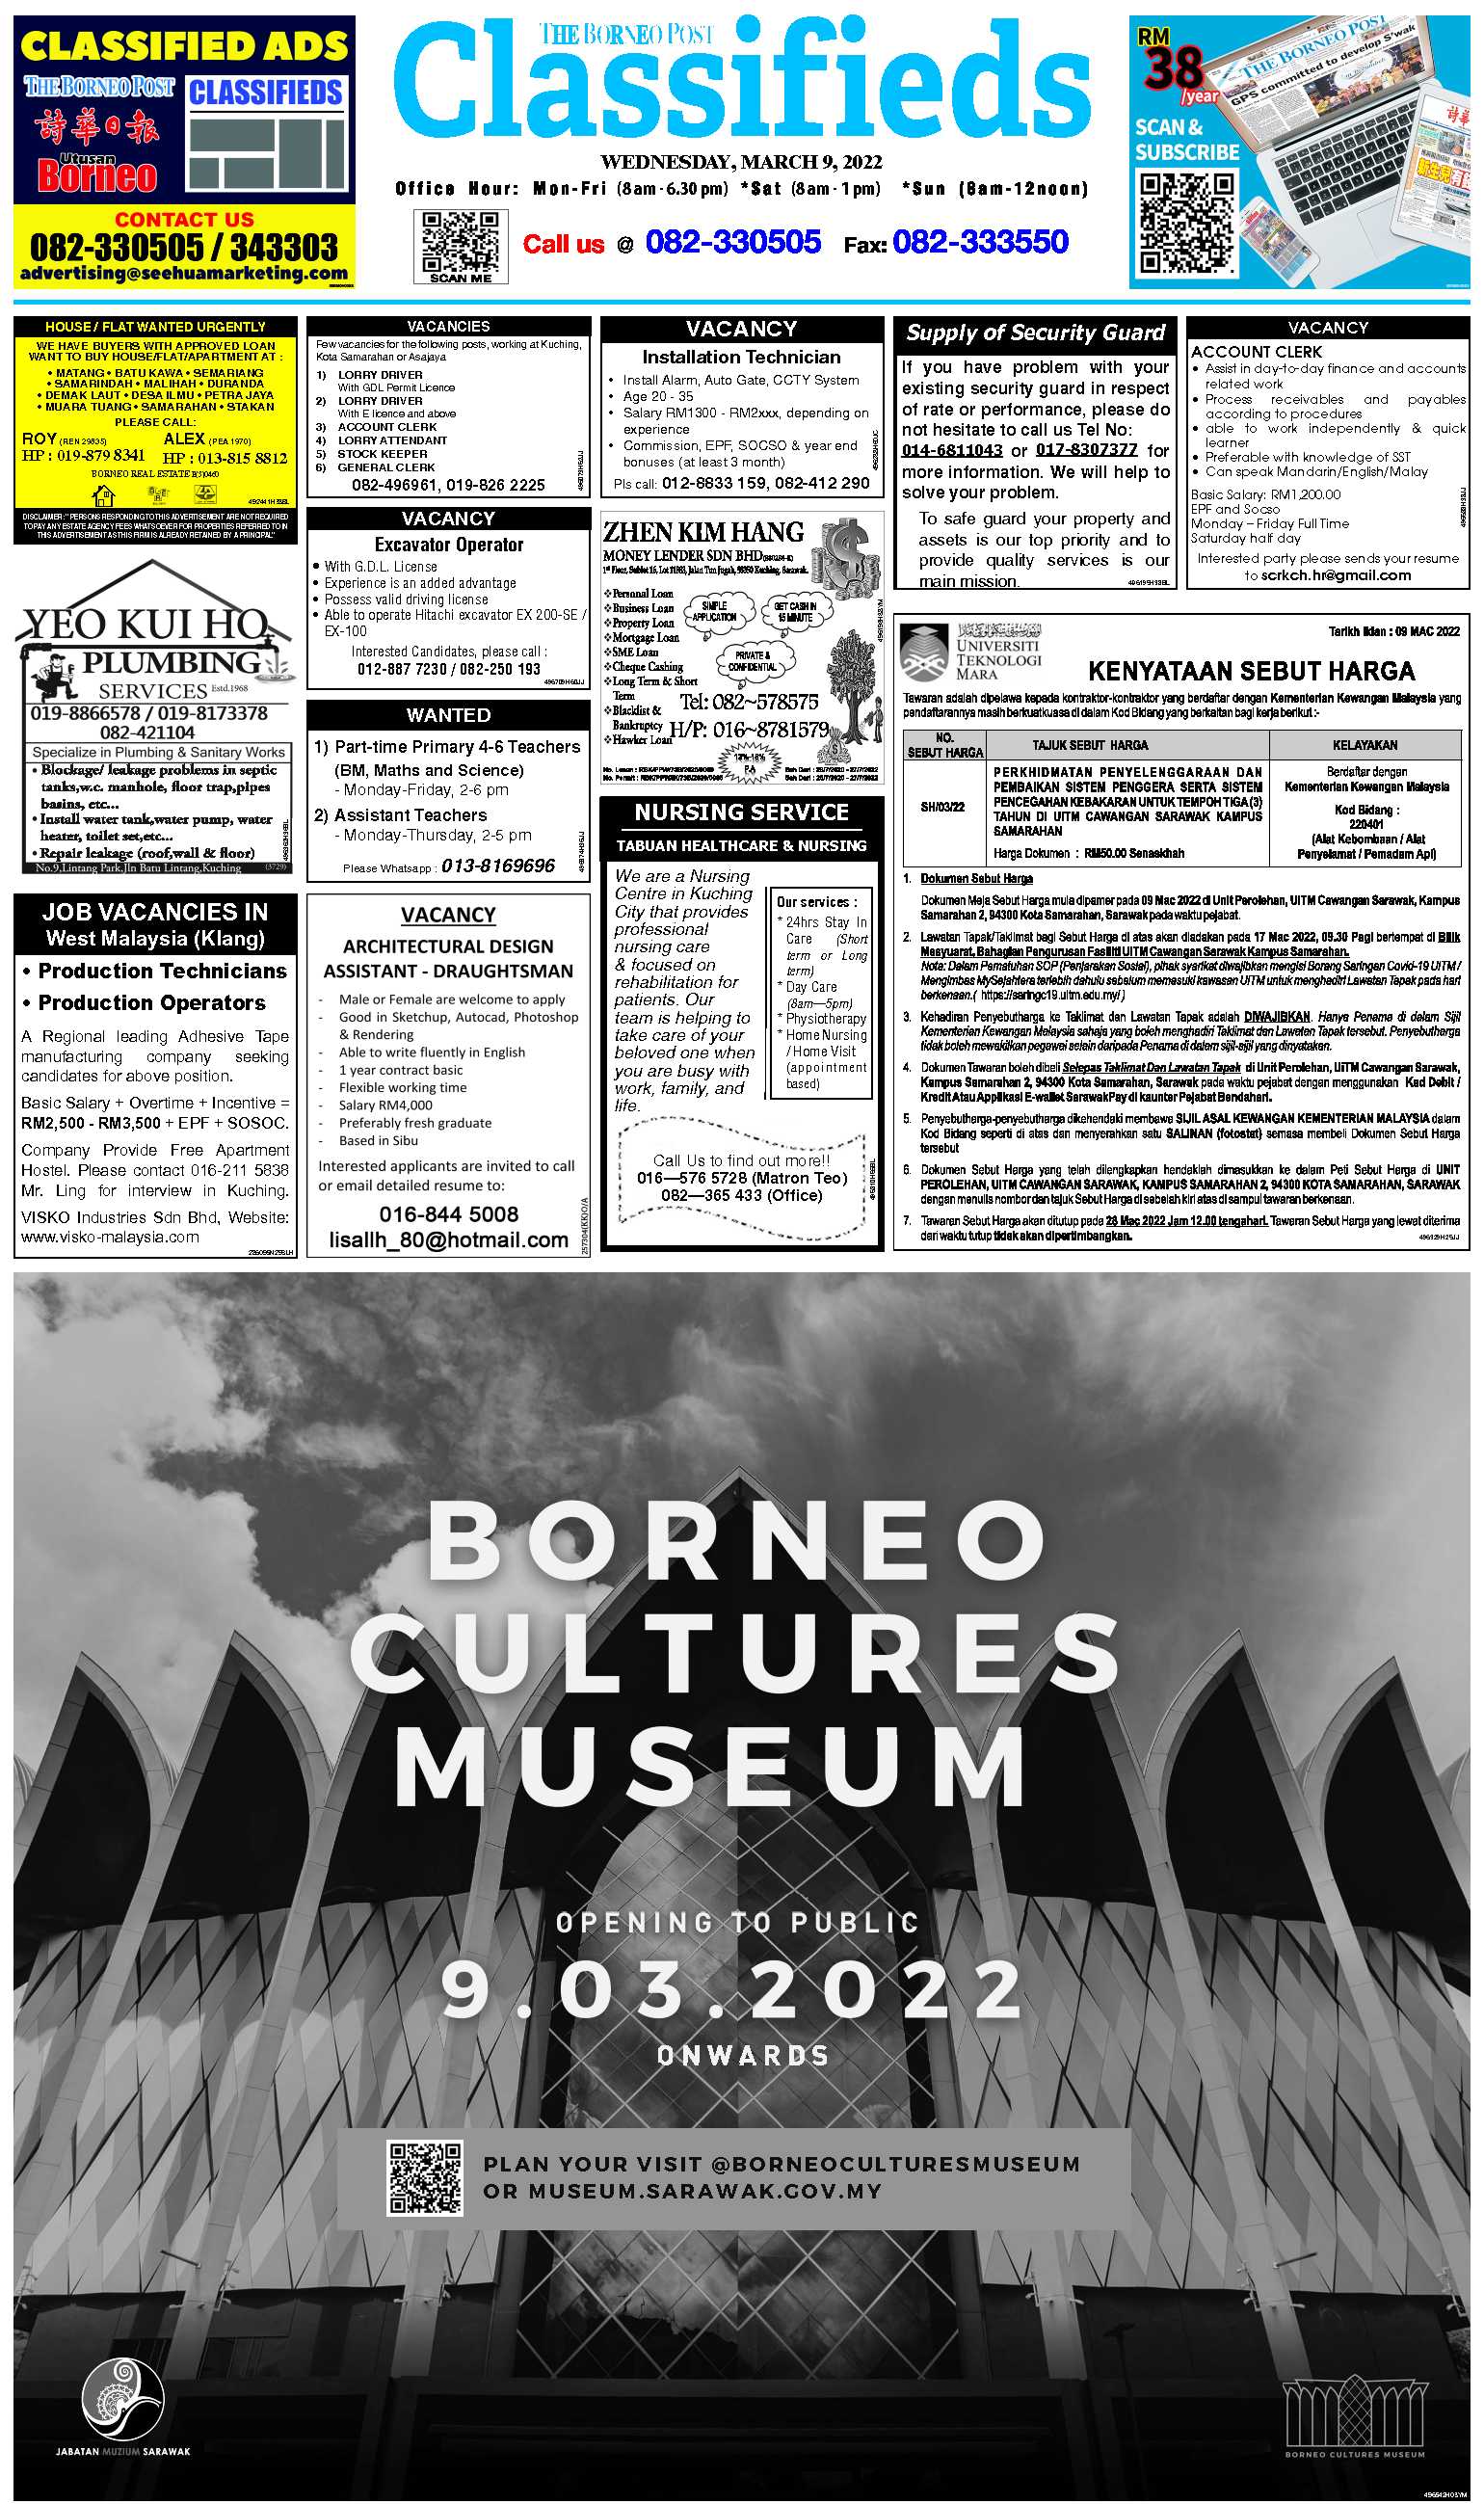 Borneo post the The Borneo